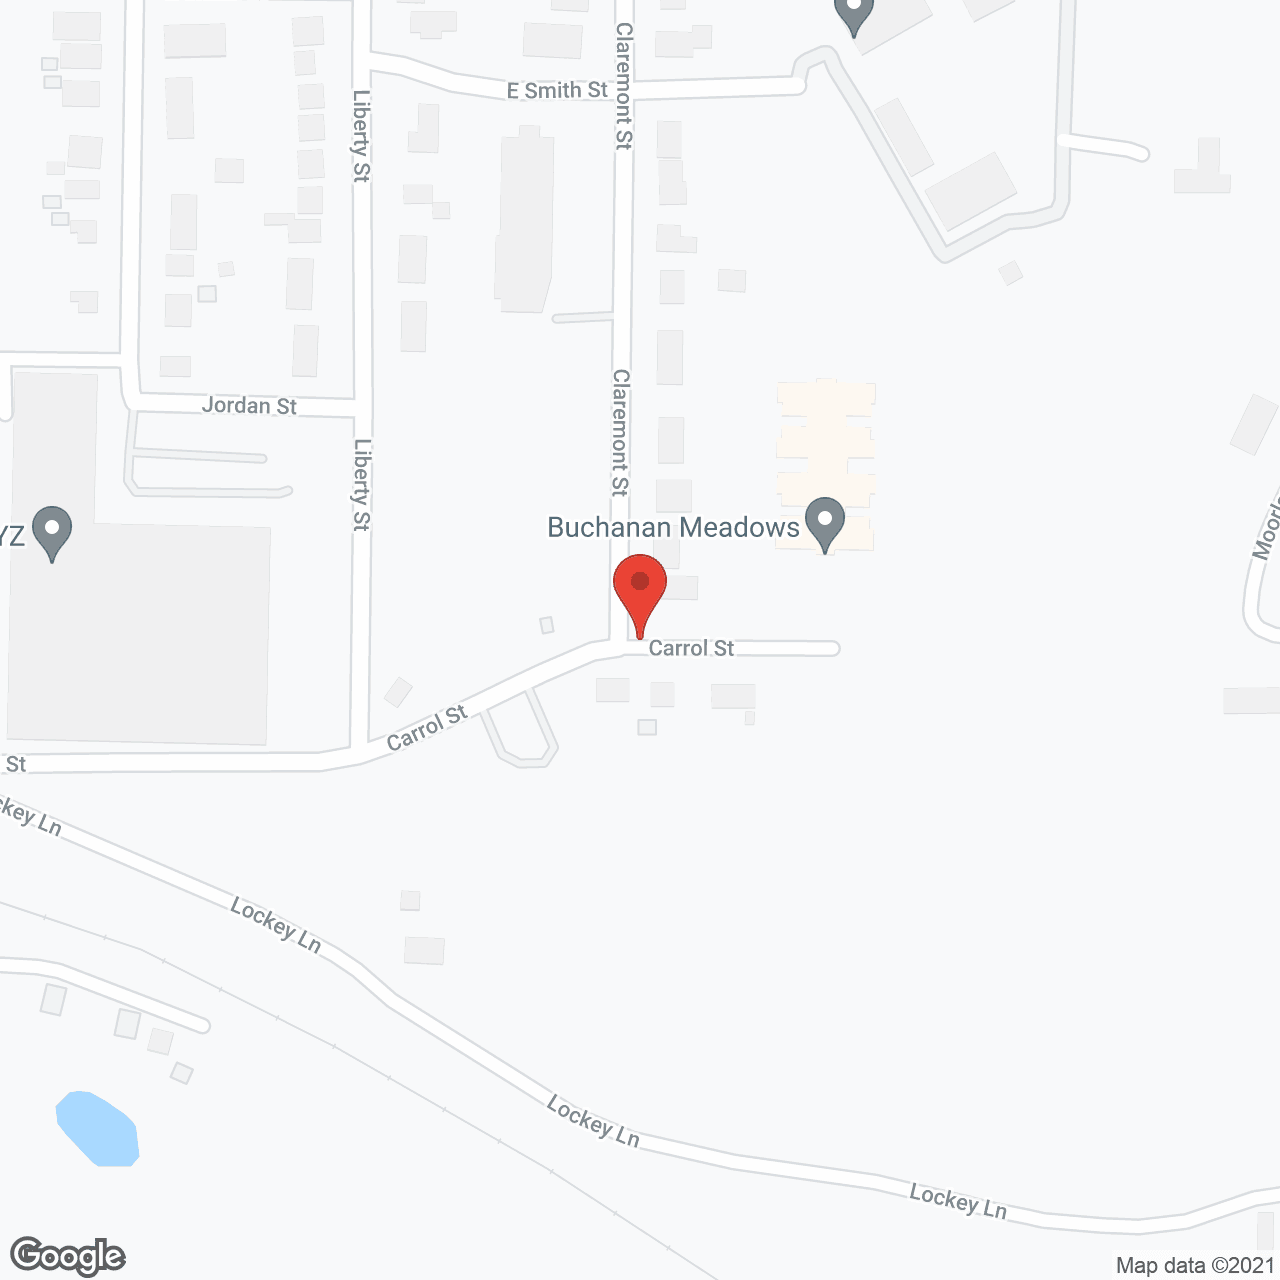 Buchanan Meadows in google map